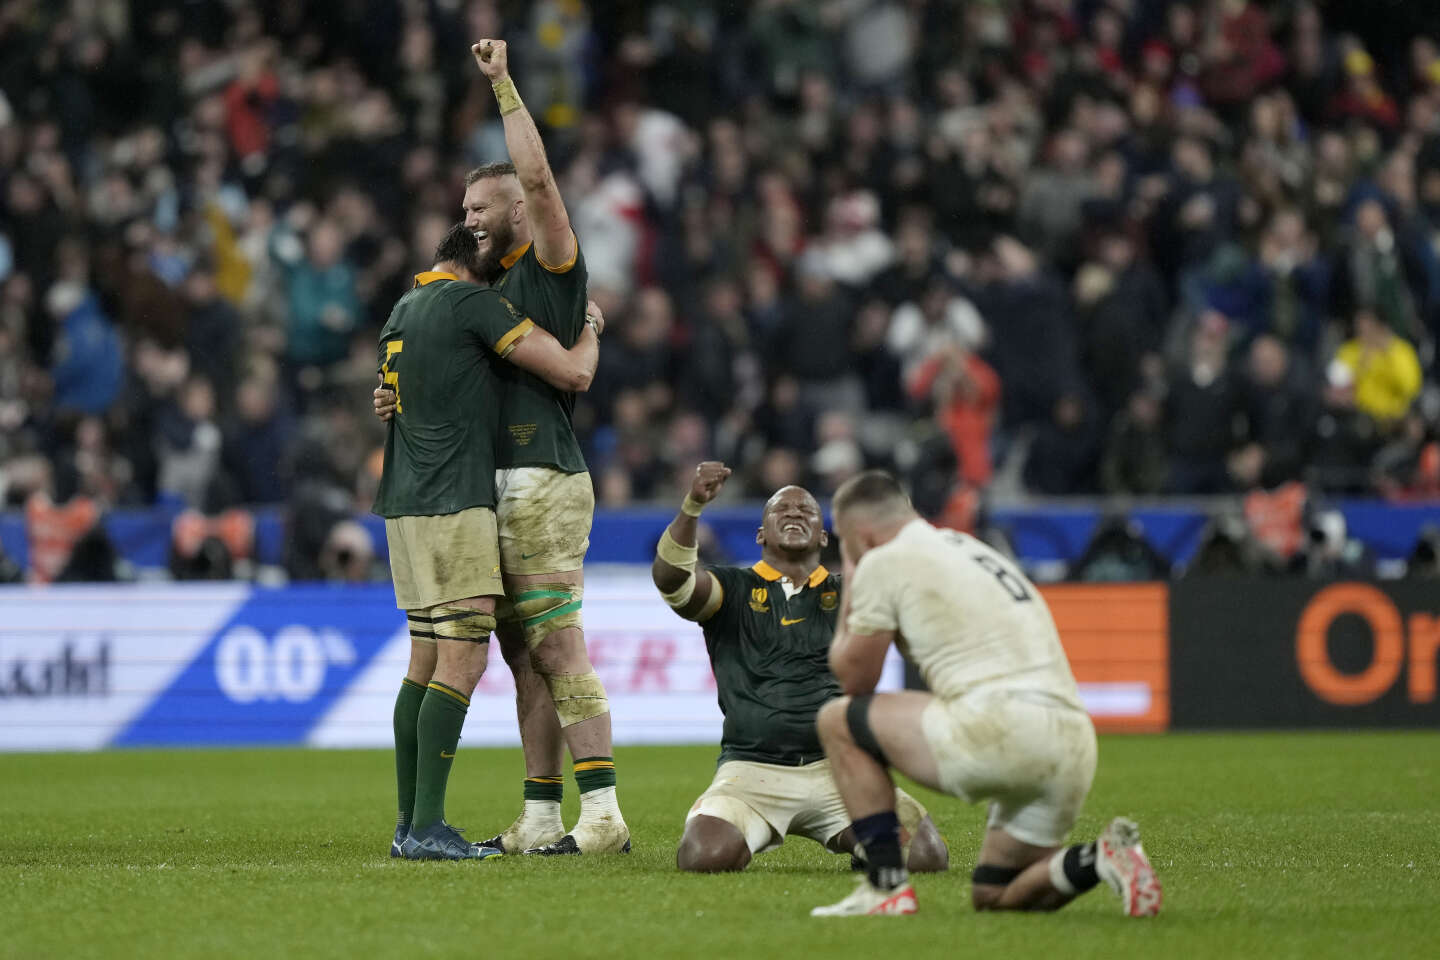 De Springboks, winnaars tot de laatste, zullen hun titel verdedigen in de finale van de Rugby World Cup